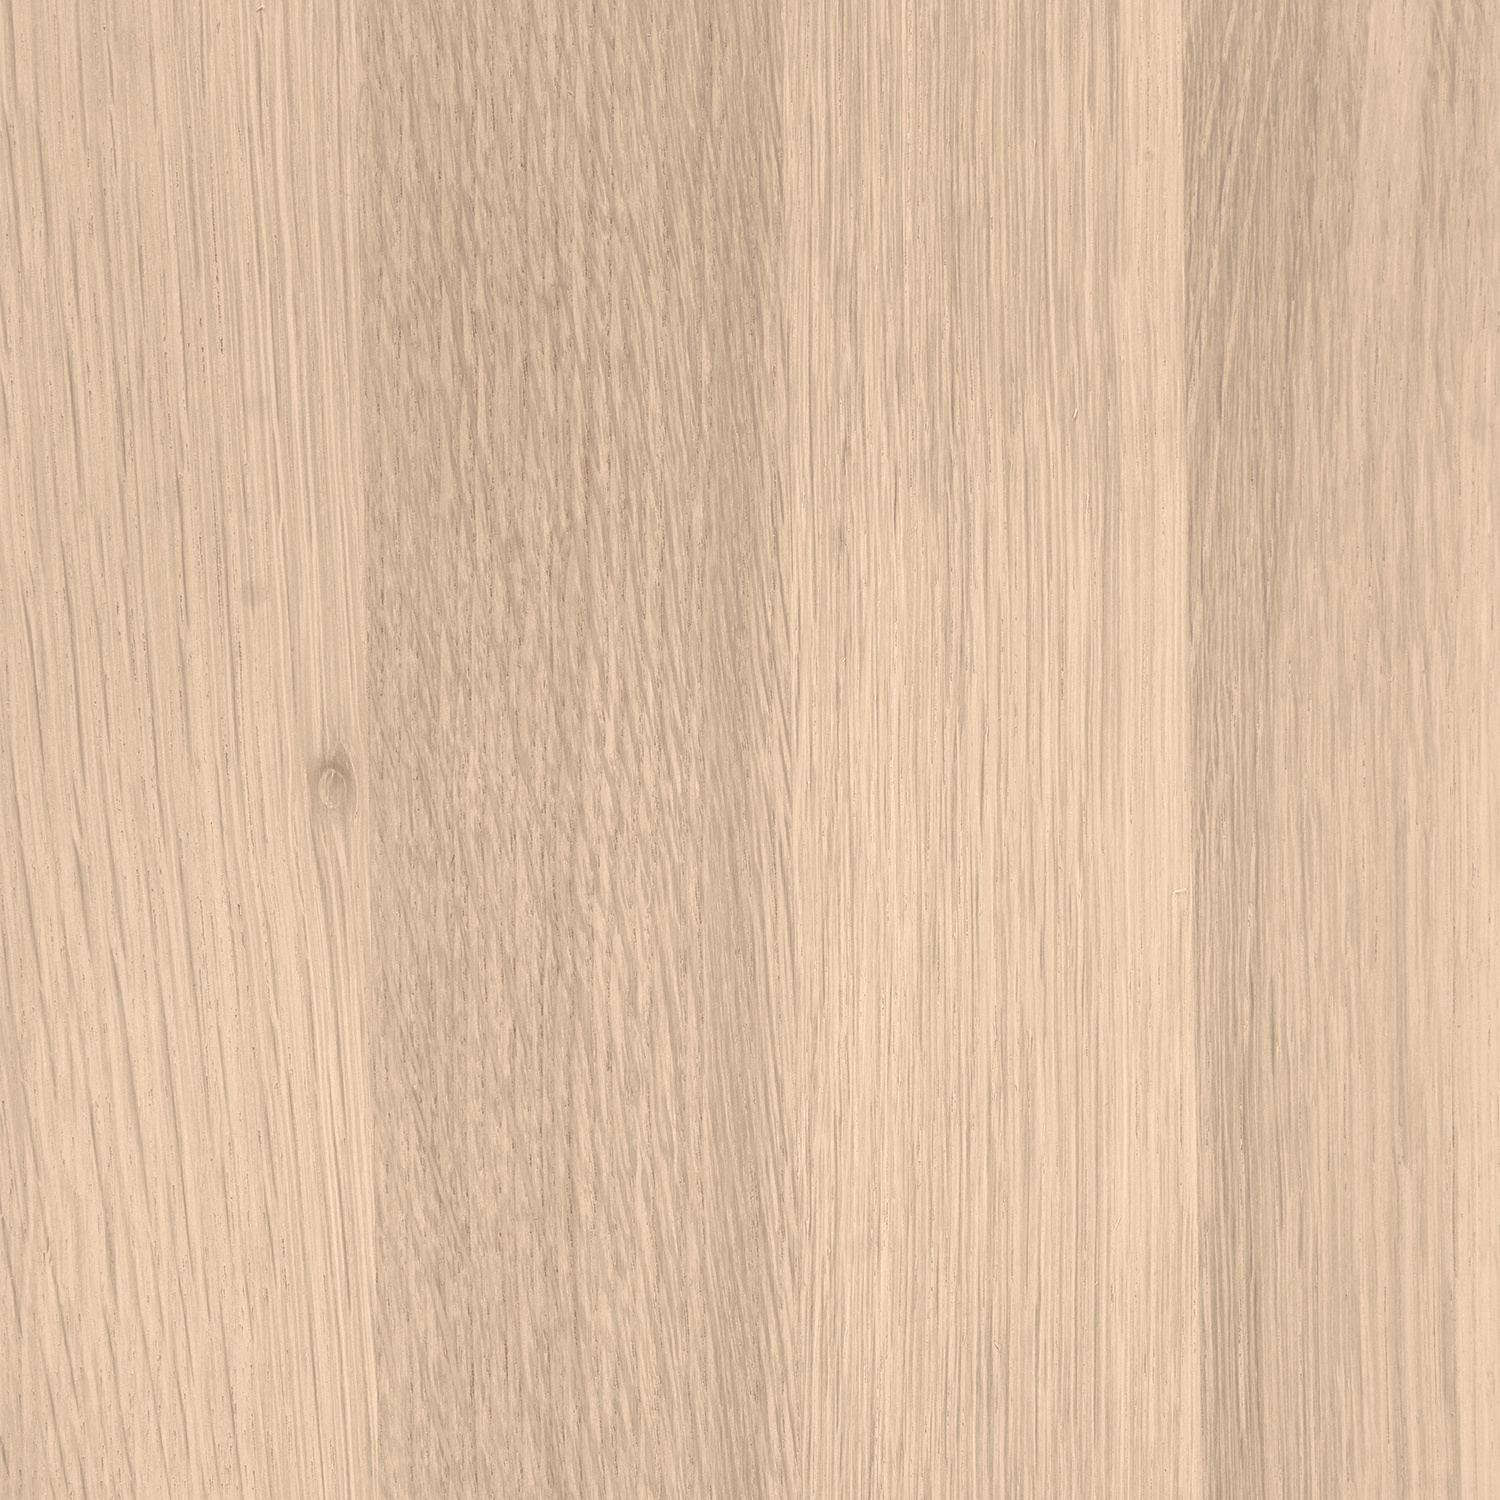  Tischplatte Eiche - Schweizer Kante - nach Maß - 4 cm dick - Eichenholz A-Qualität - Eiche Tischplatte massiv - verleimt & künstlich getrocknet (HF 8-12%) - 50-120x50-350 cm